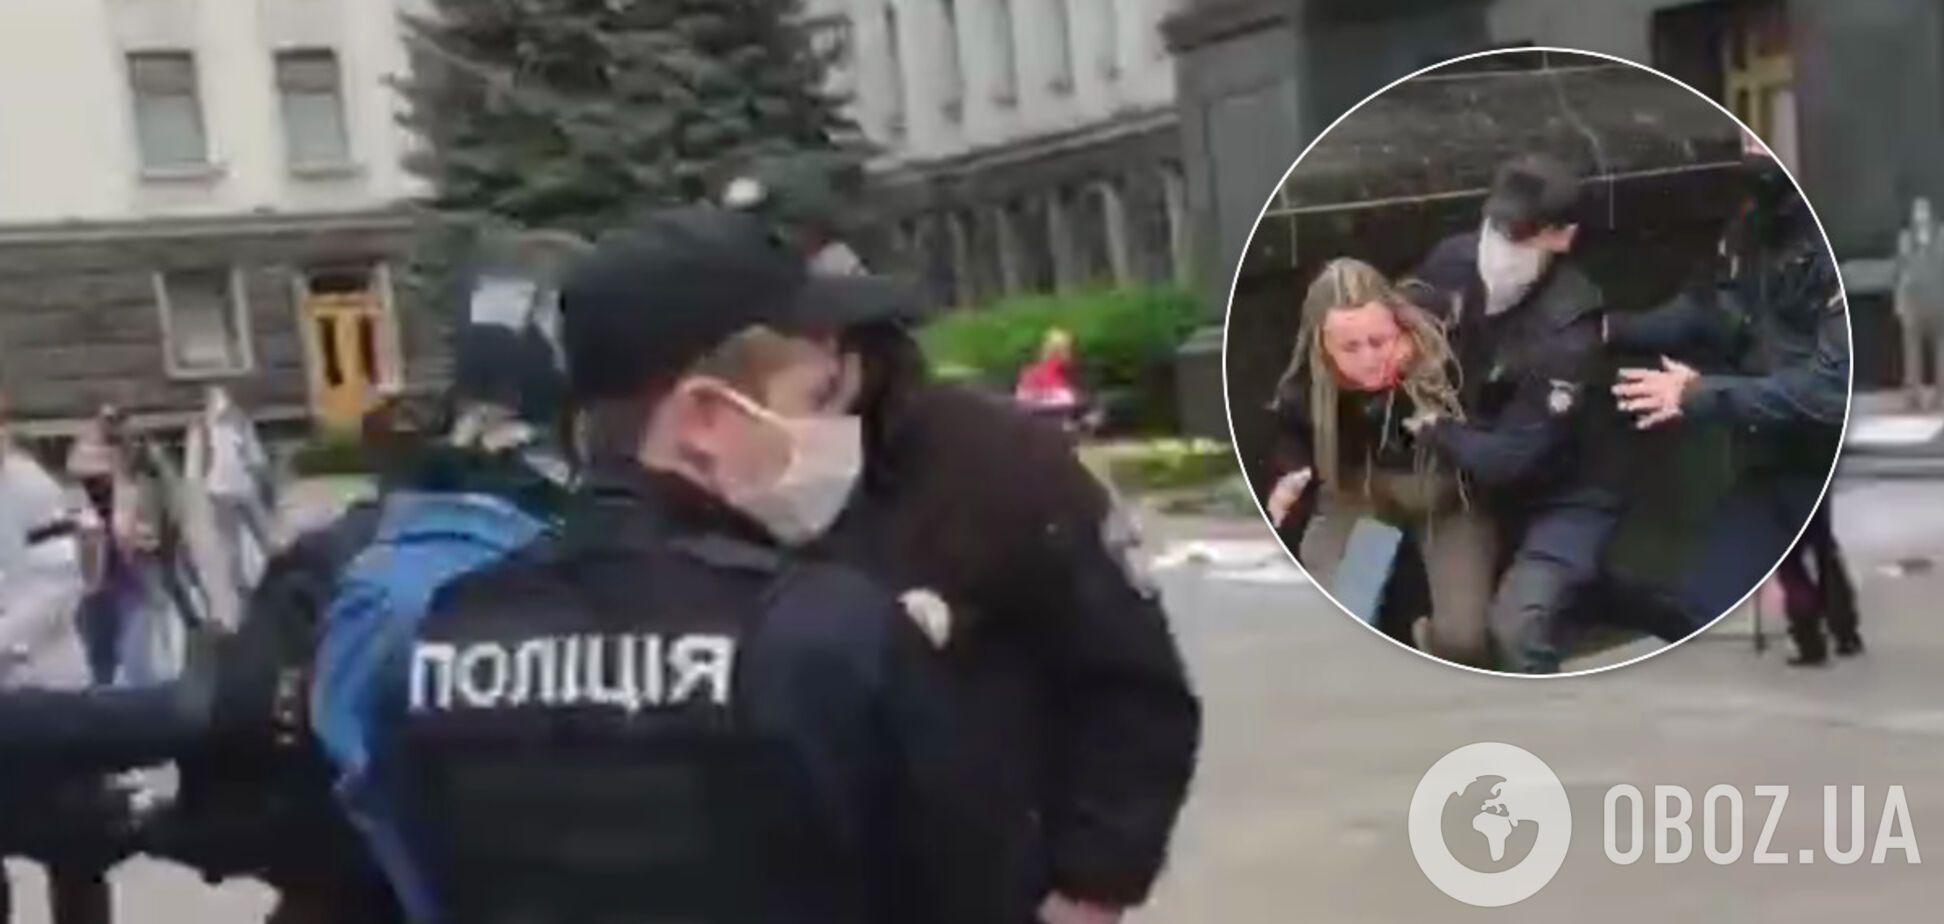 Під Офісом президента у Києві відбулися сутички. Фото і відео